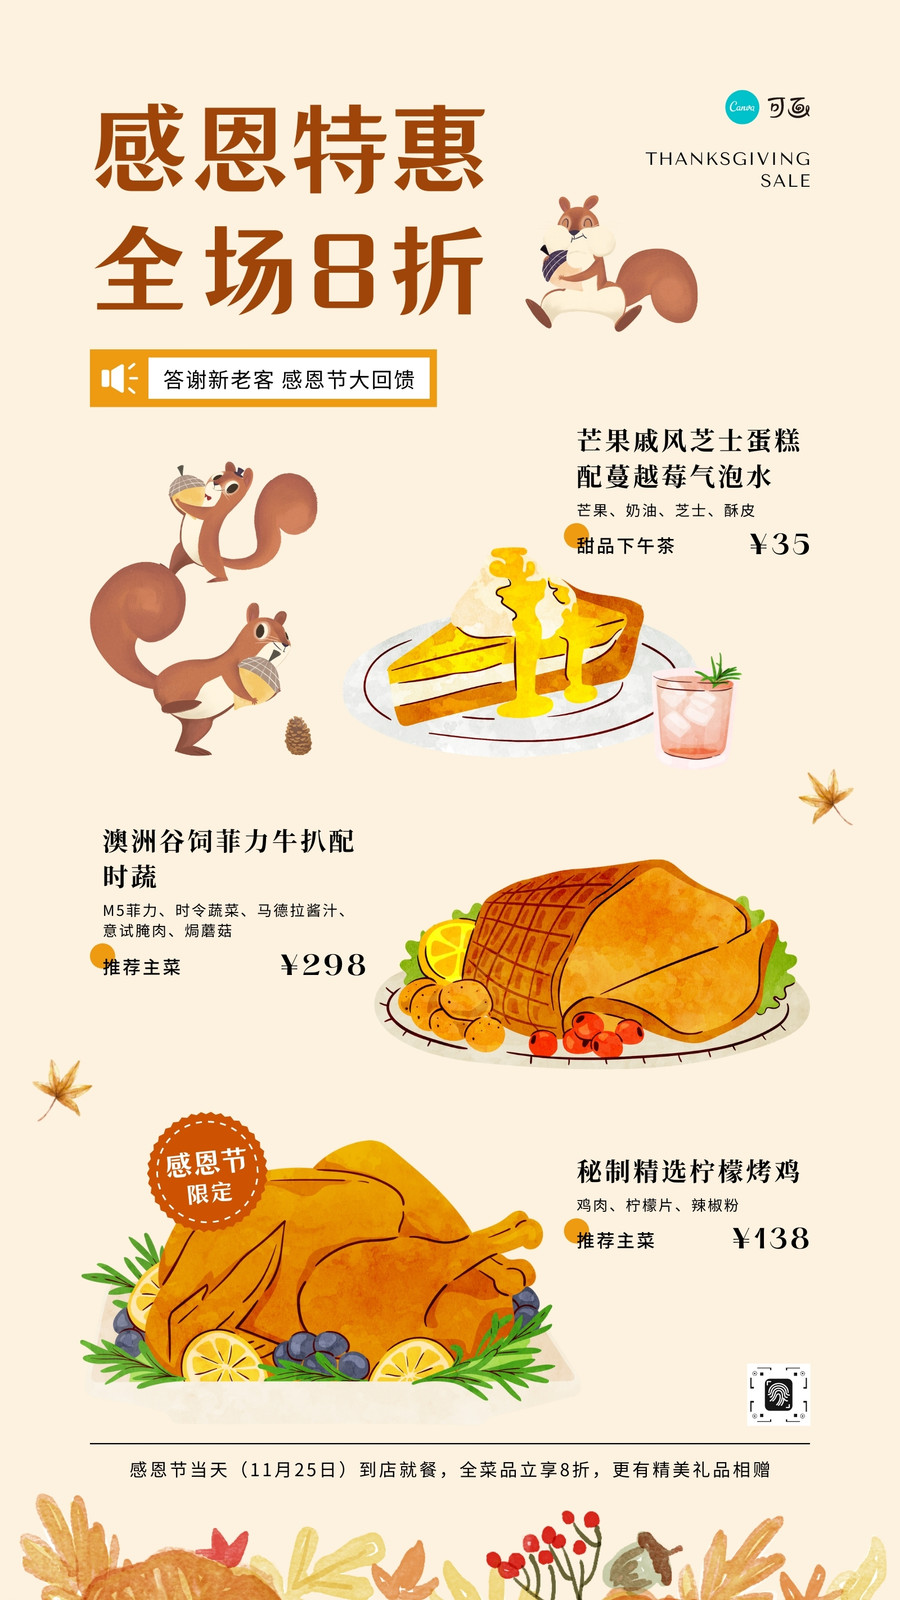 黄橙色感恩节特惠美食插画火鸡菜品菜单手绘感恩节节日促销中文手机